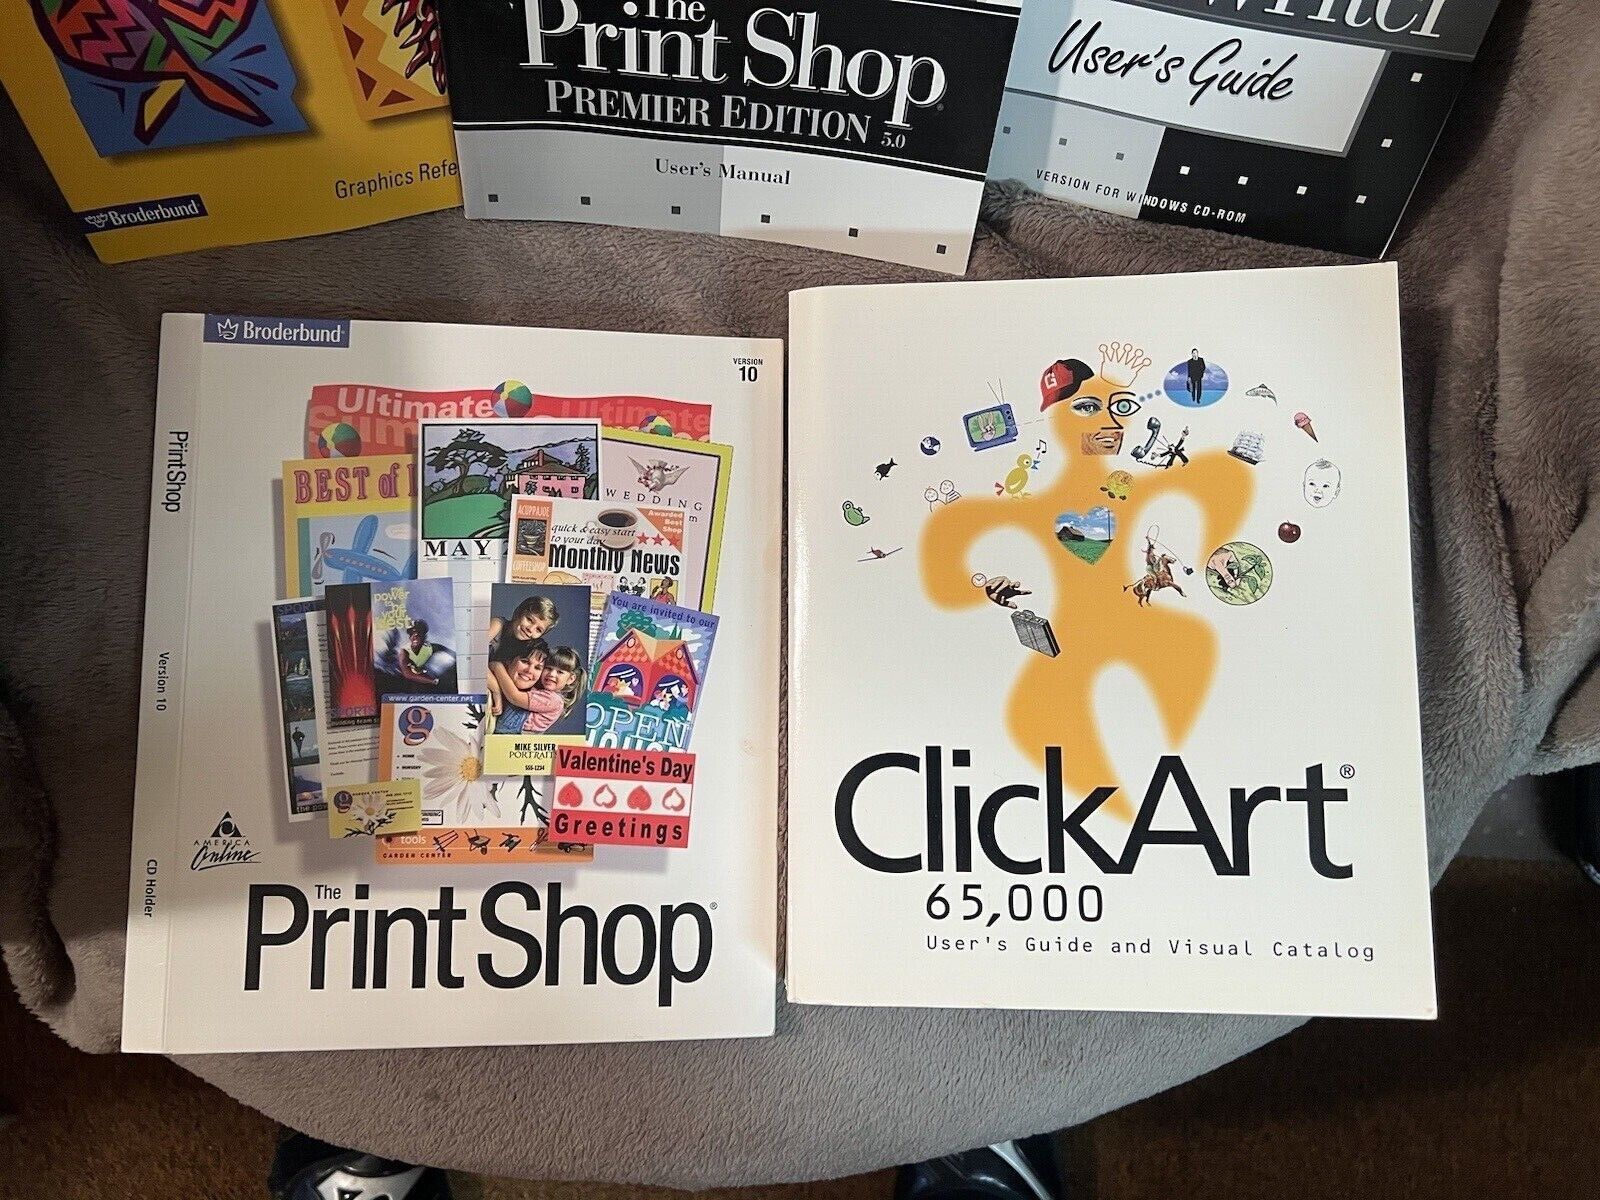 1997 The Print Shop Premier Edition 5.0 Graphics Book Manual Click Art 65,000